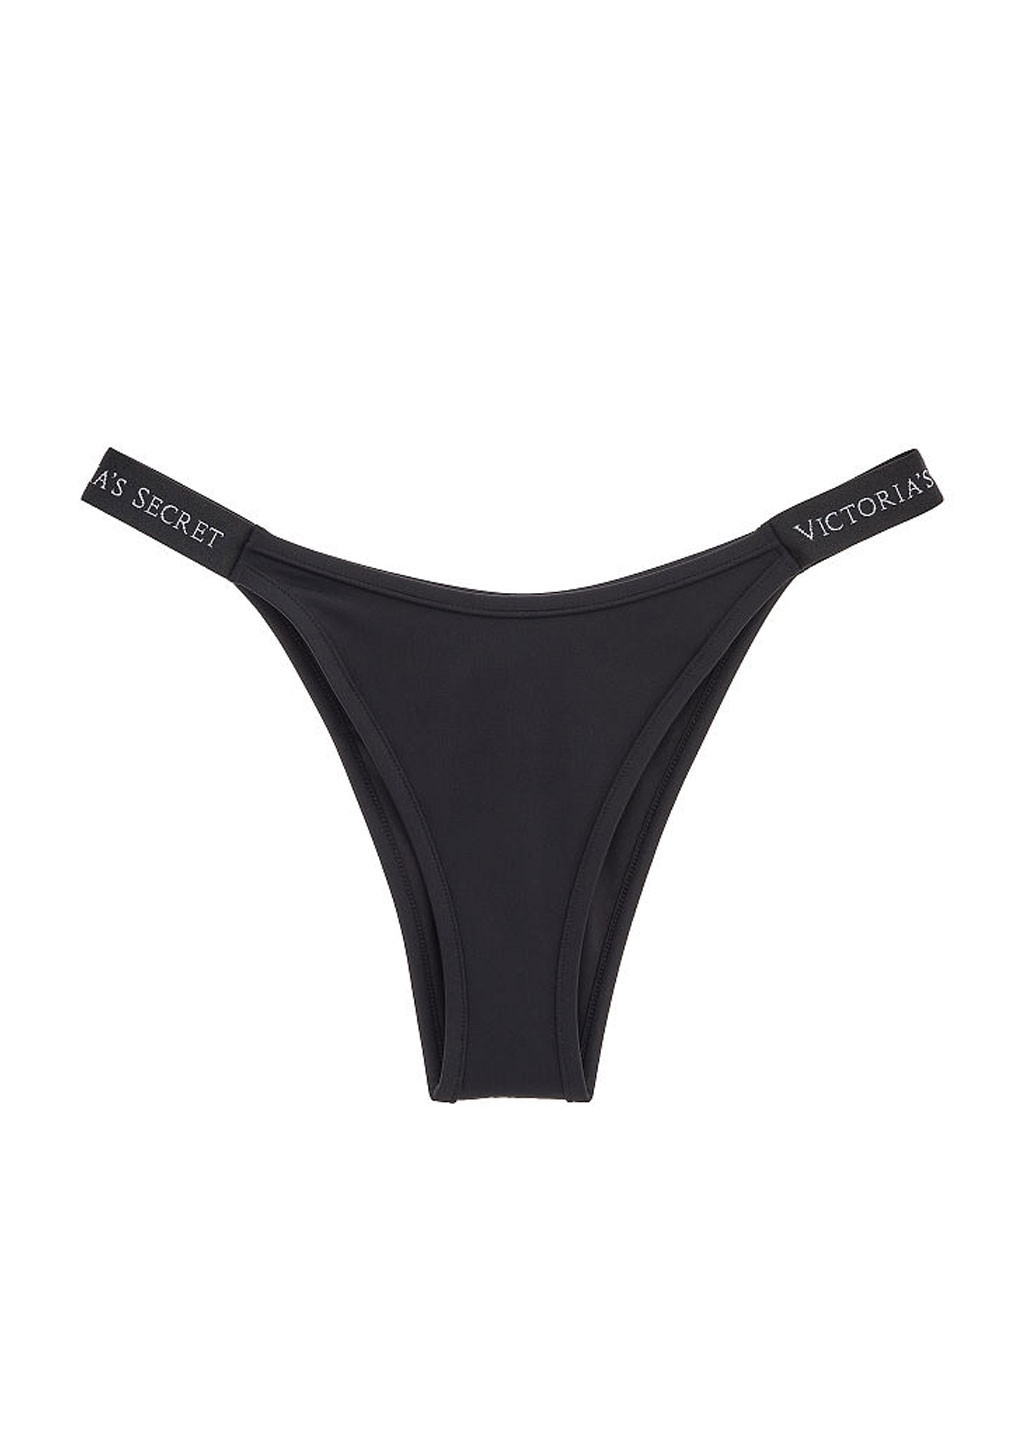 Черный летний купальник (лиф, трусы) раздельный, бандо Victoria's Secret